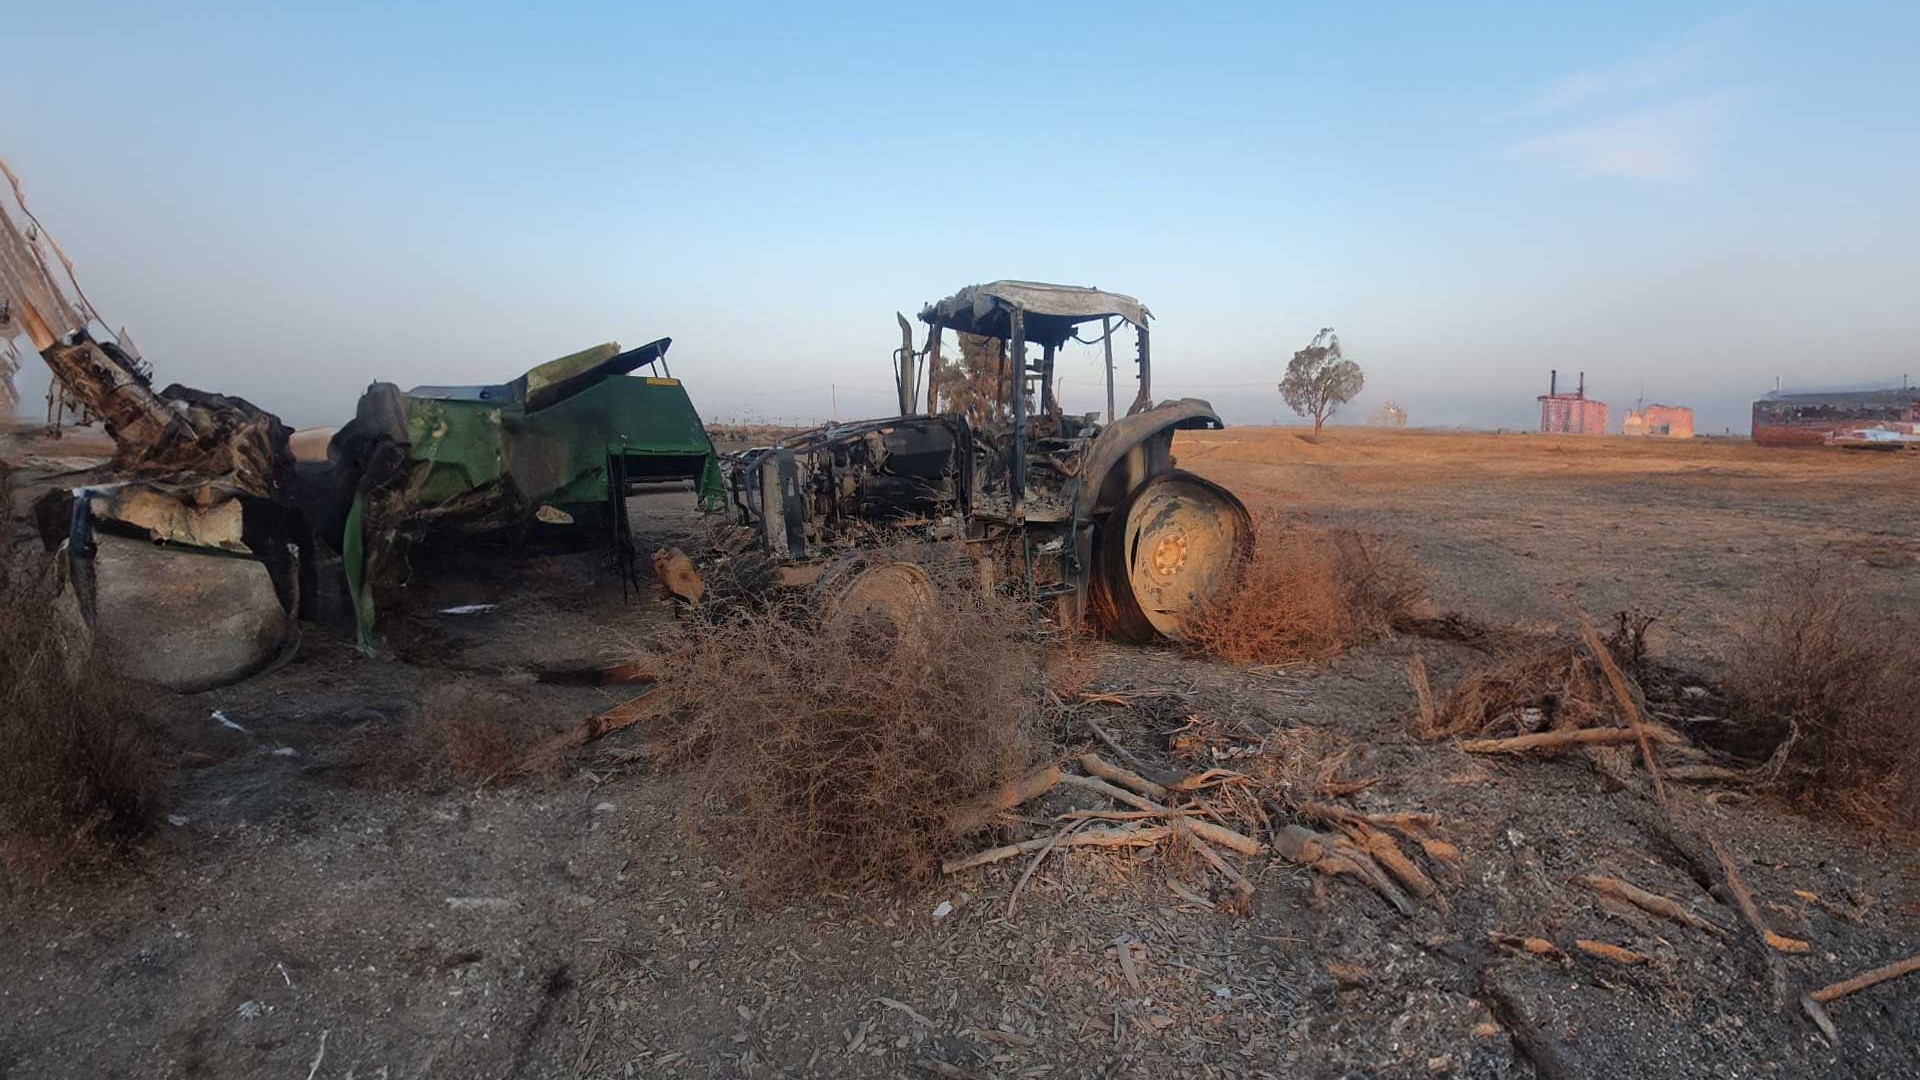 Vernielde tractor - Samen sterk voor de landbouwsector